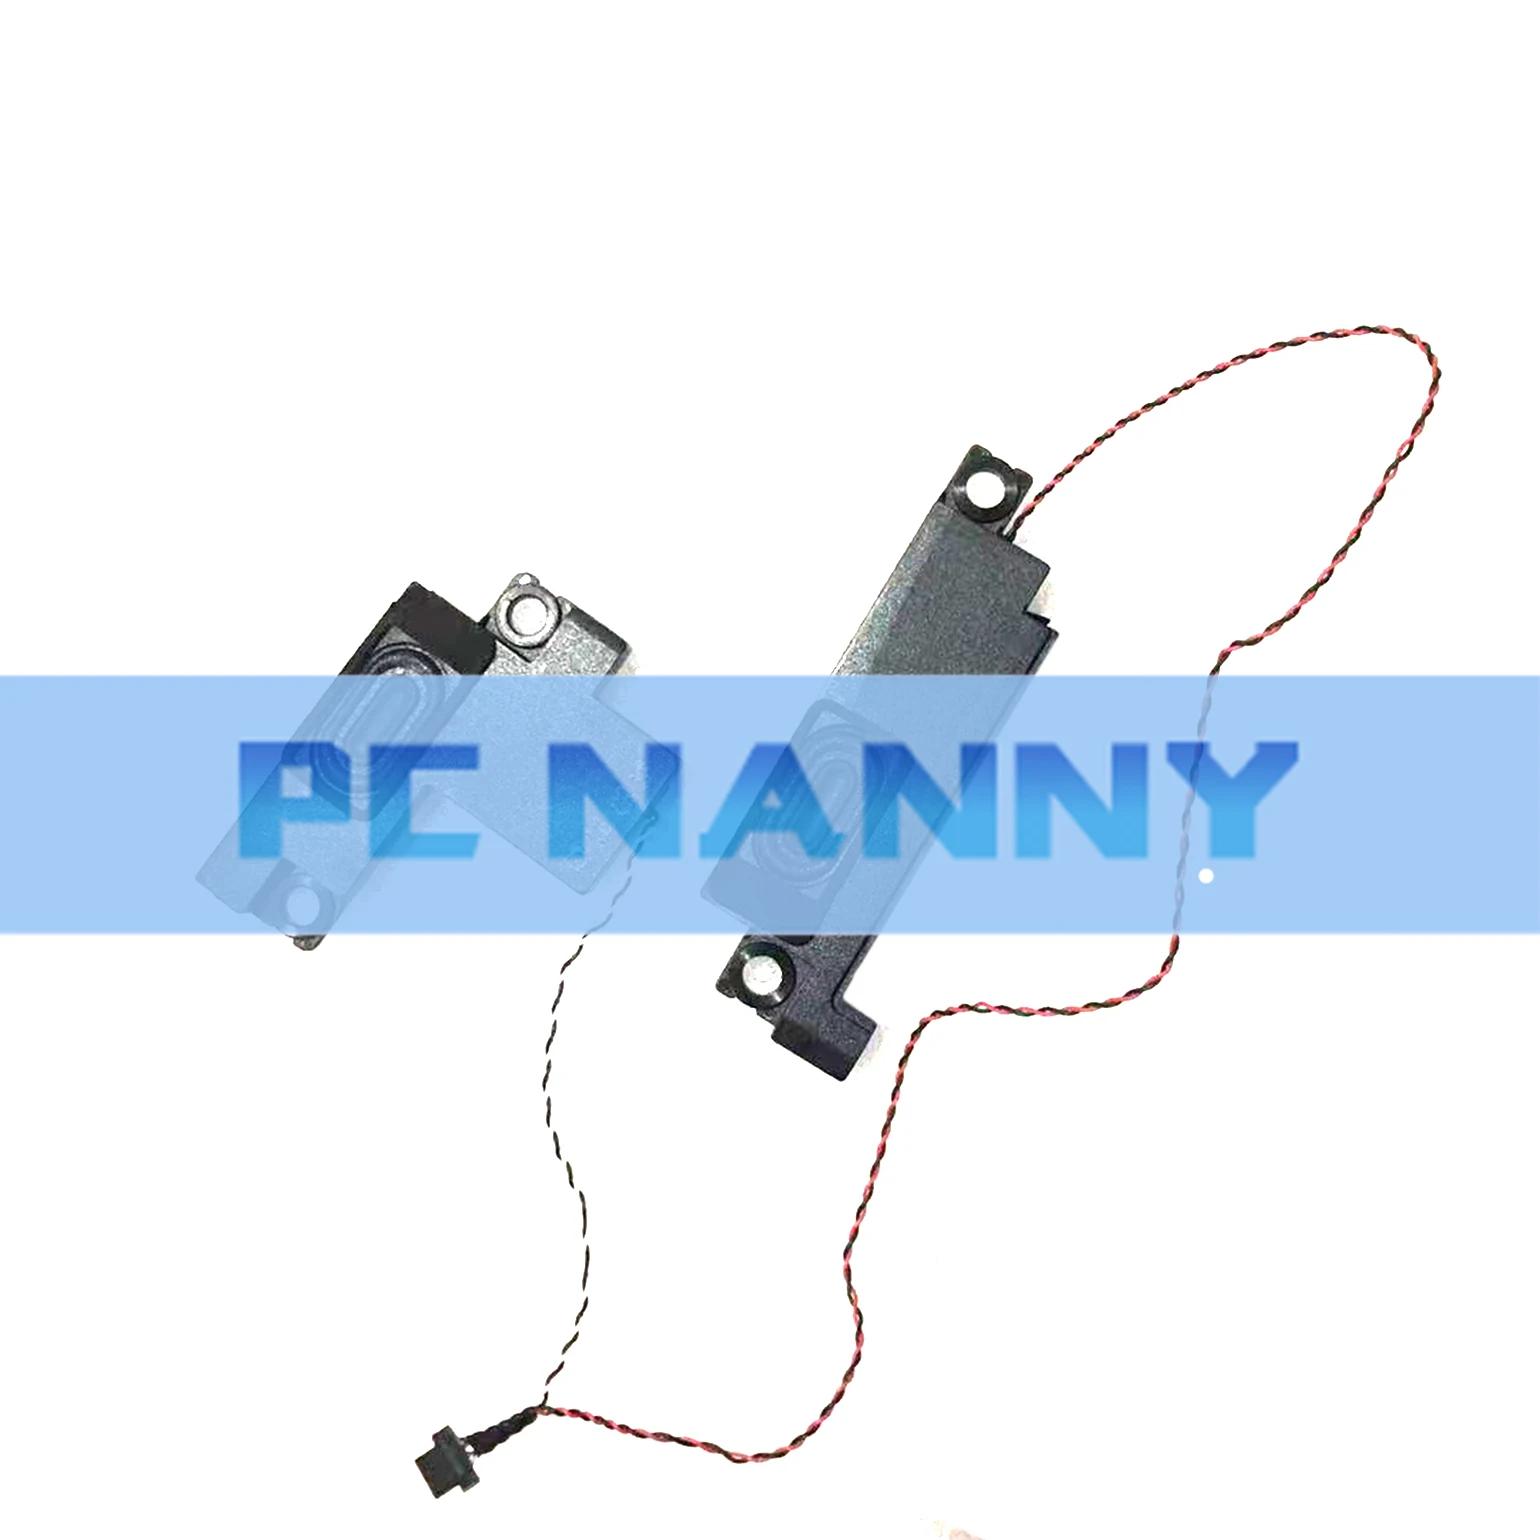 ACER R5-471 R5-471T Ʈ Ŀ, PC NANNY, ¿